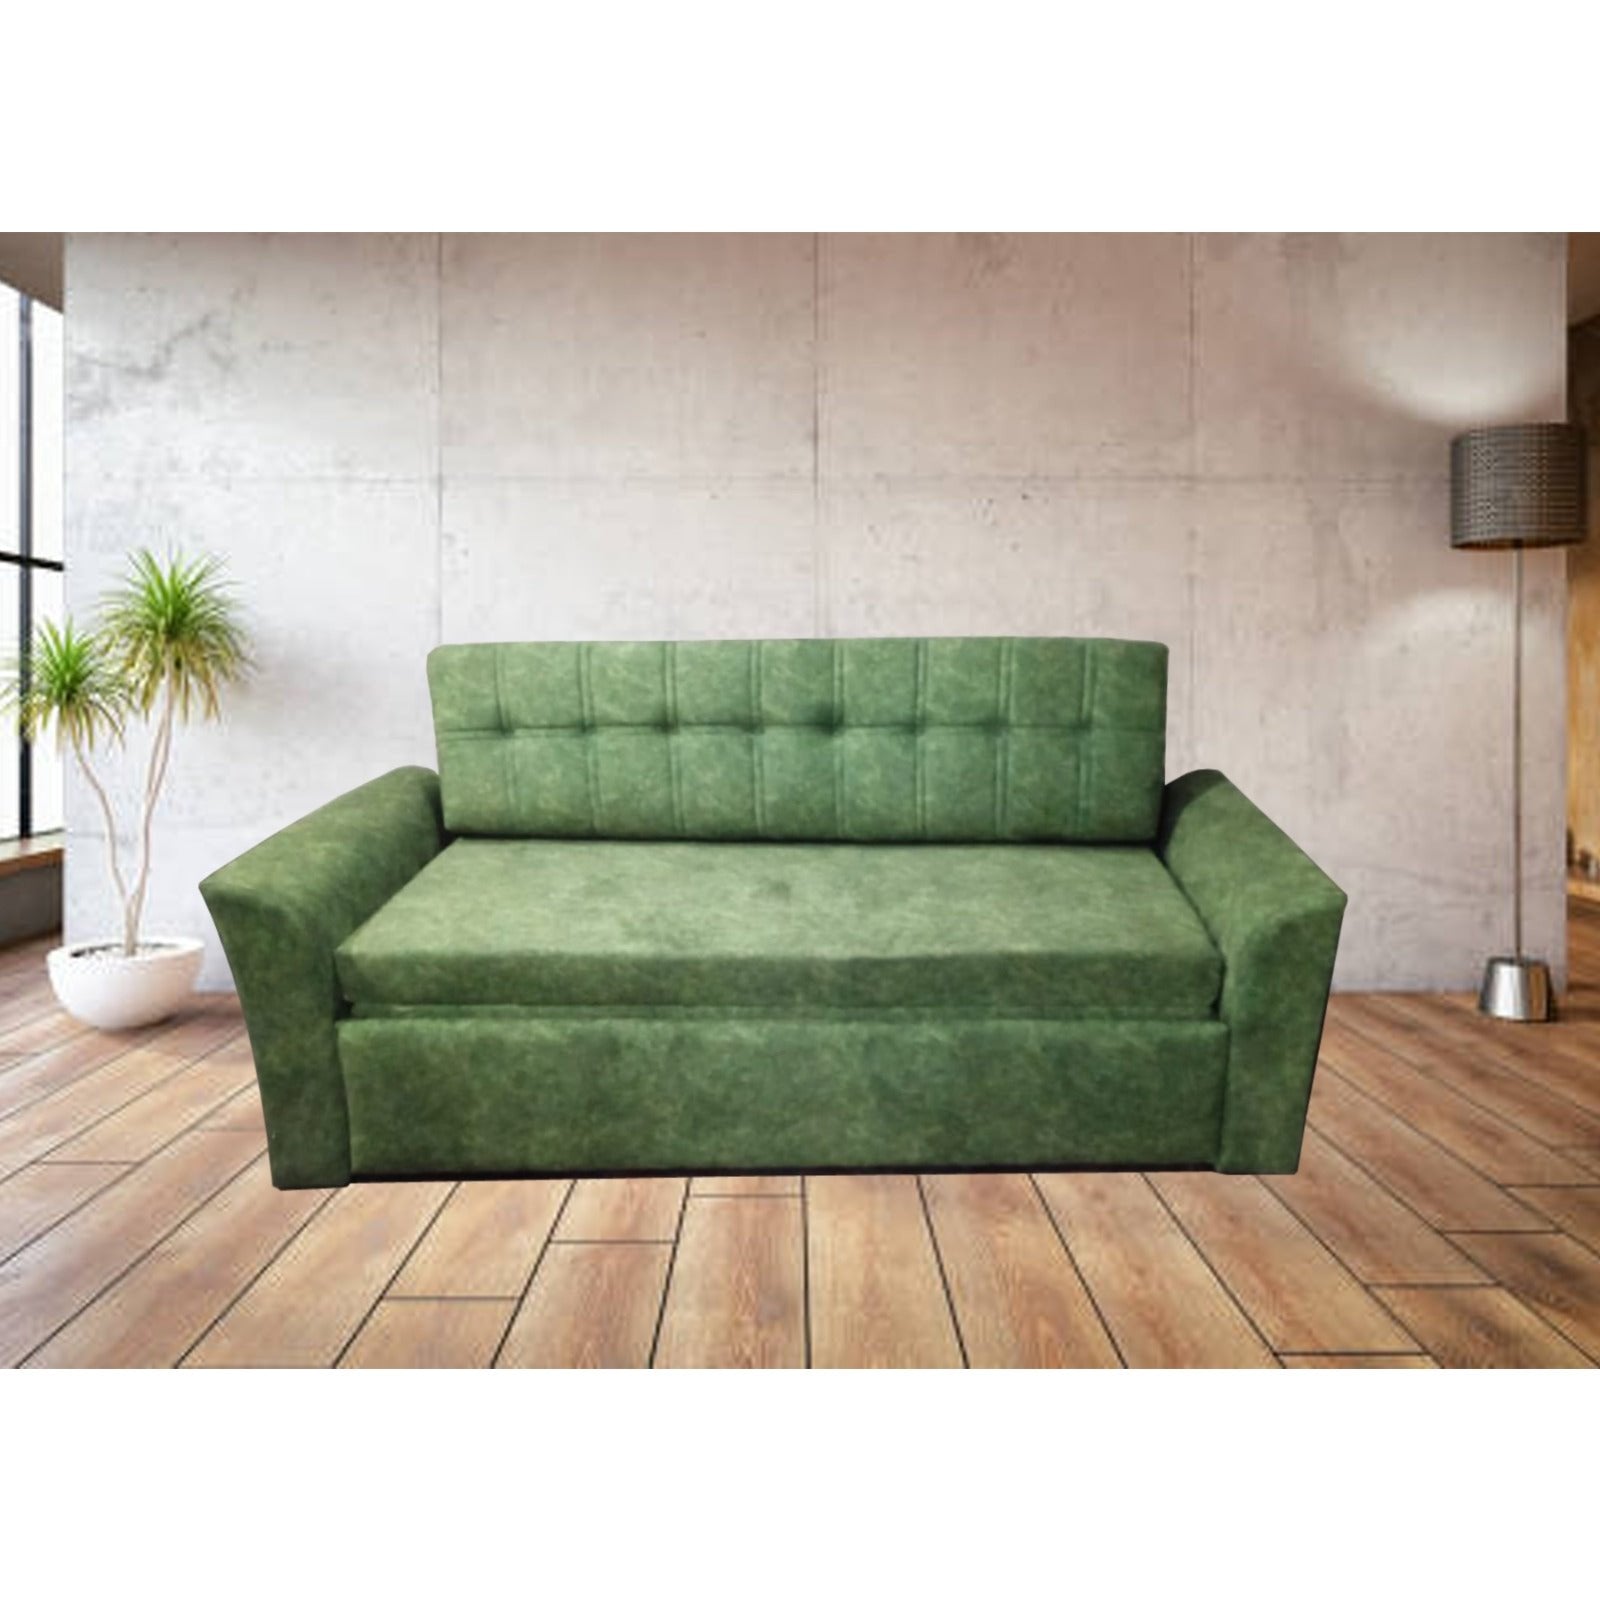 SM-GEMS C ;SOFA CUM BED FULL UPHOLSTERED Mobel Furniture